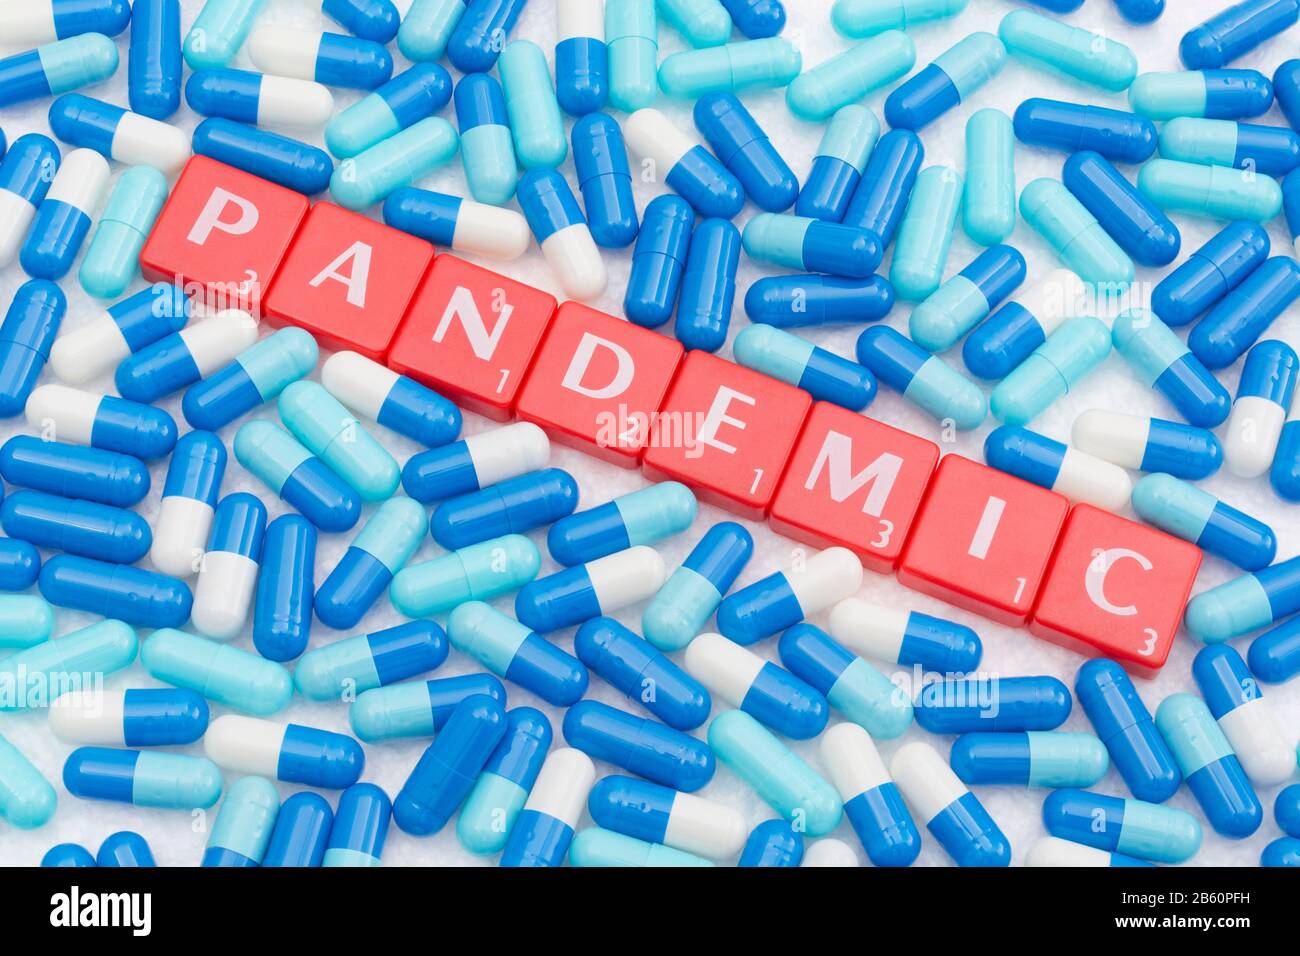 Drug capsules / pills & Letter tiles with word PANDEMIC. For 2020 Coronavirus pandemic, COVID-19, CV19, Wuhan virus, medication, SARS, MERS, new virus Stock Photo